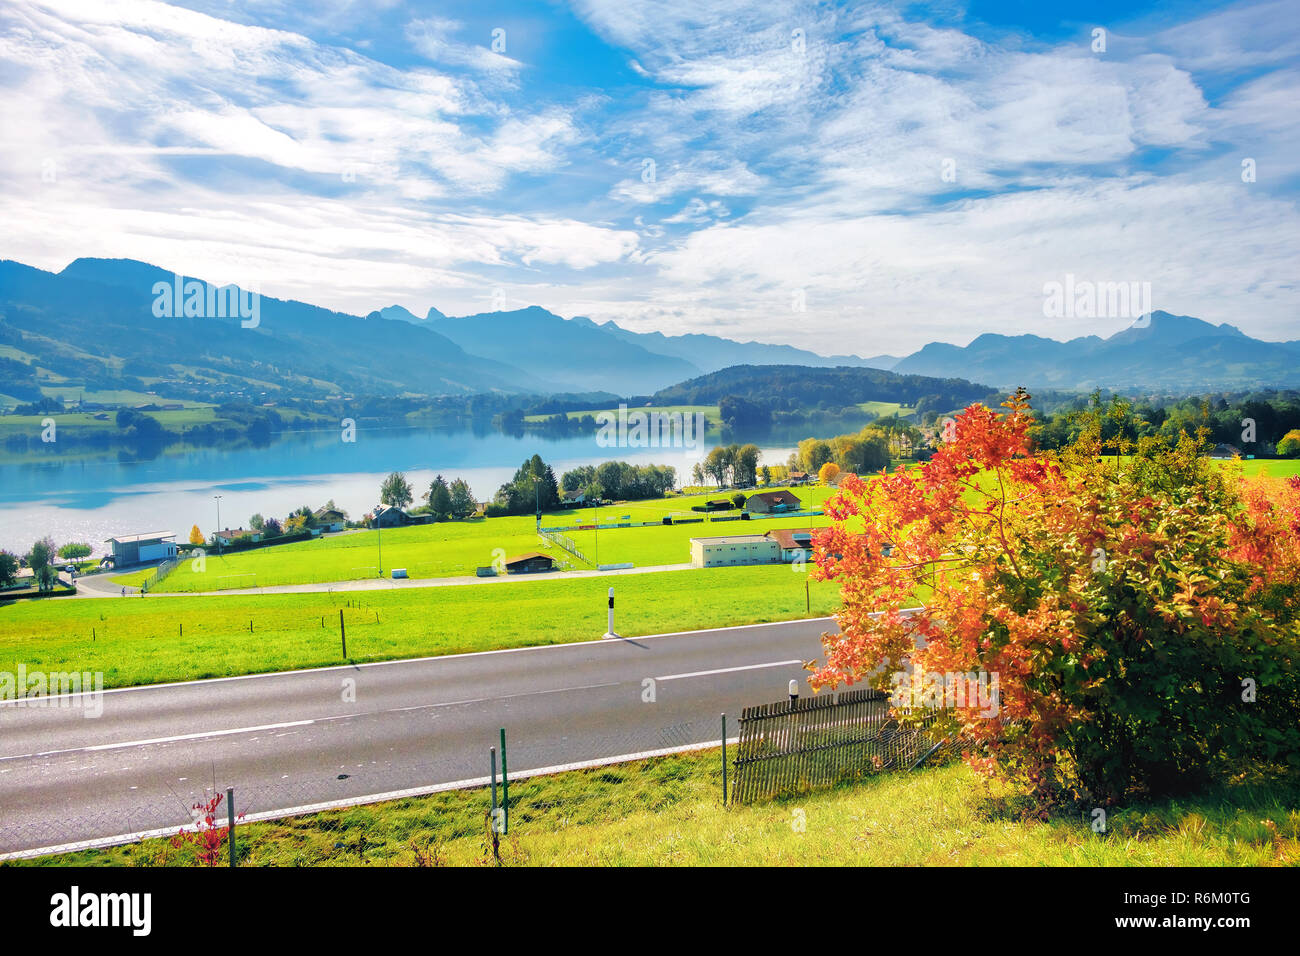 Paysage avec lac de gruyère en Suisse. Le canton de Fribourg, Suisse Banque D'Images